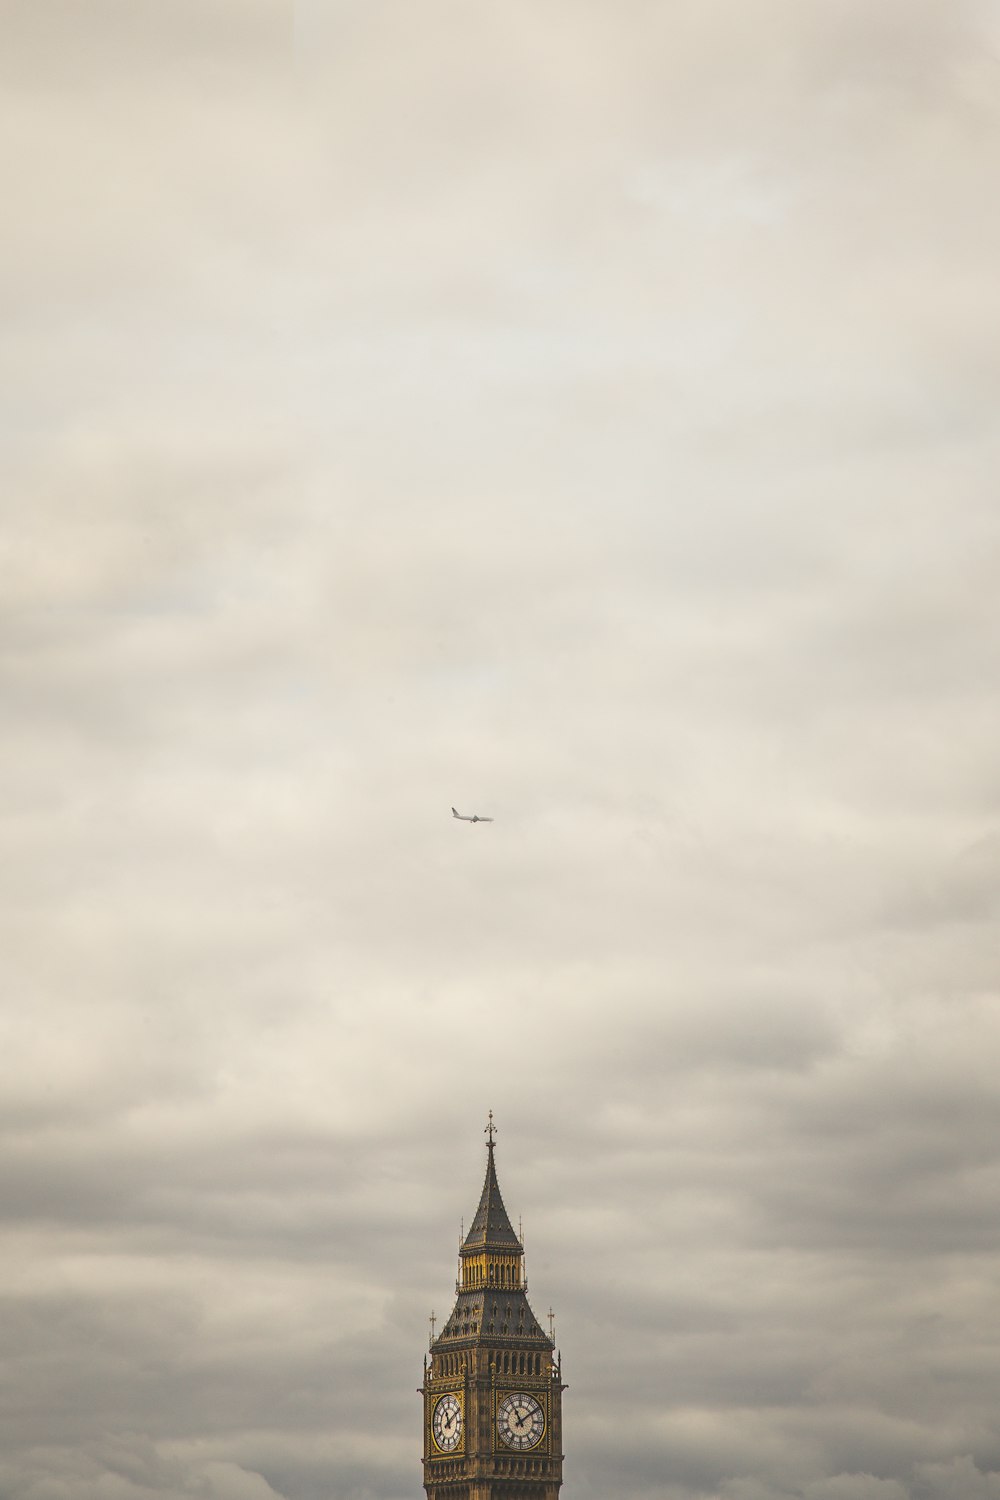 La tour Elizabeth sous un avion de ligne blanc pendant de lourds nuages